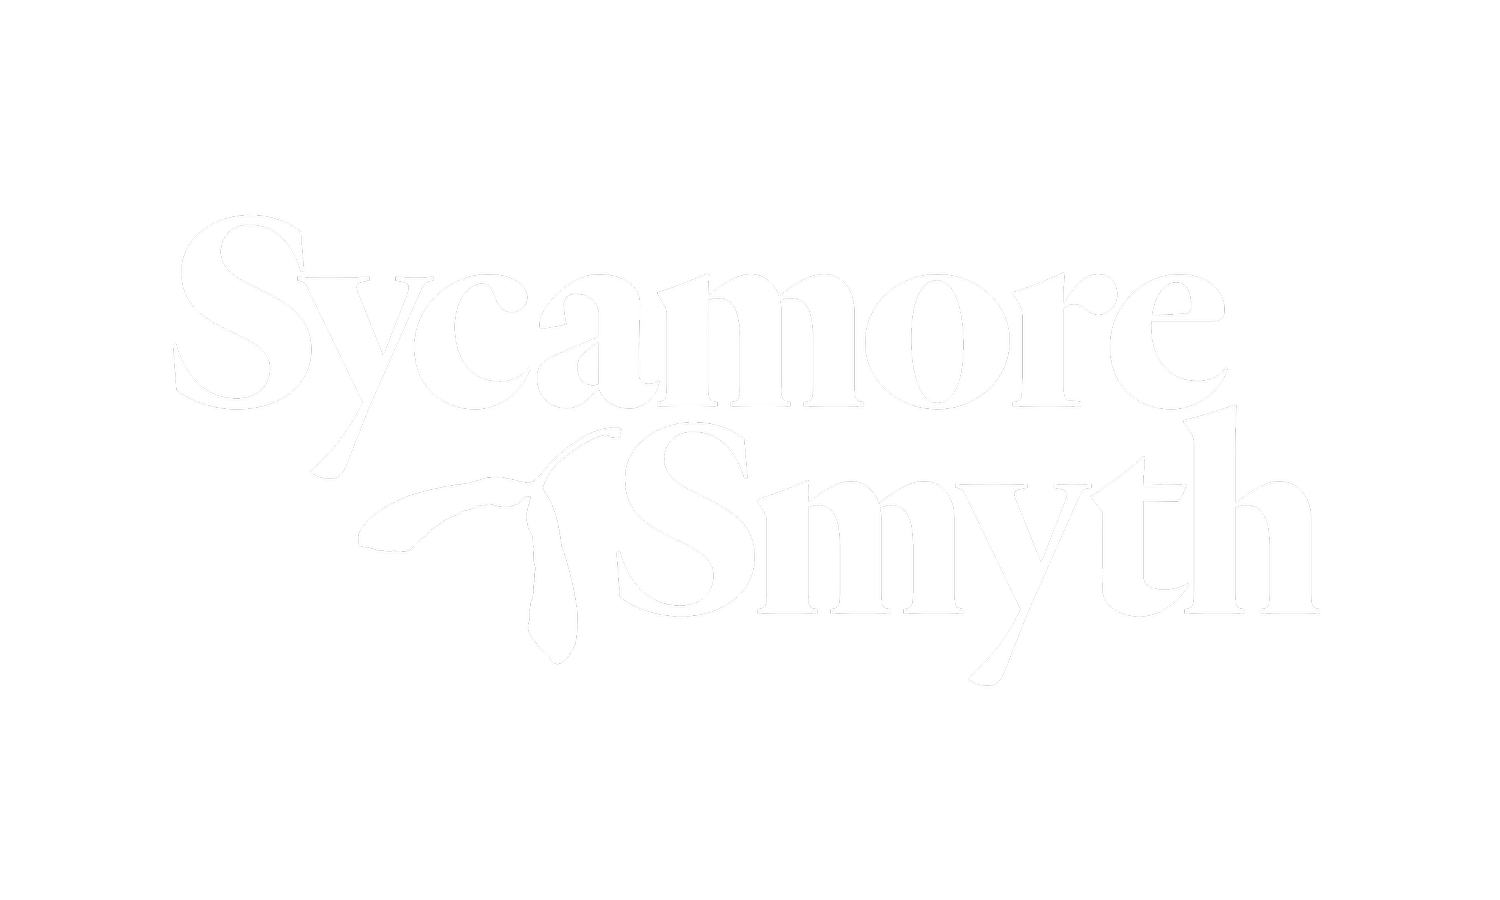 Sycamore Smyth